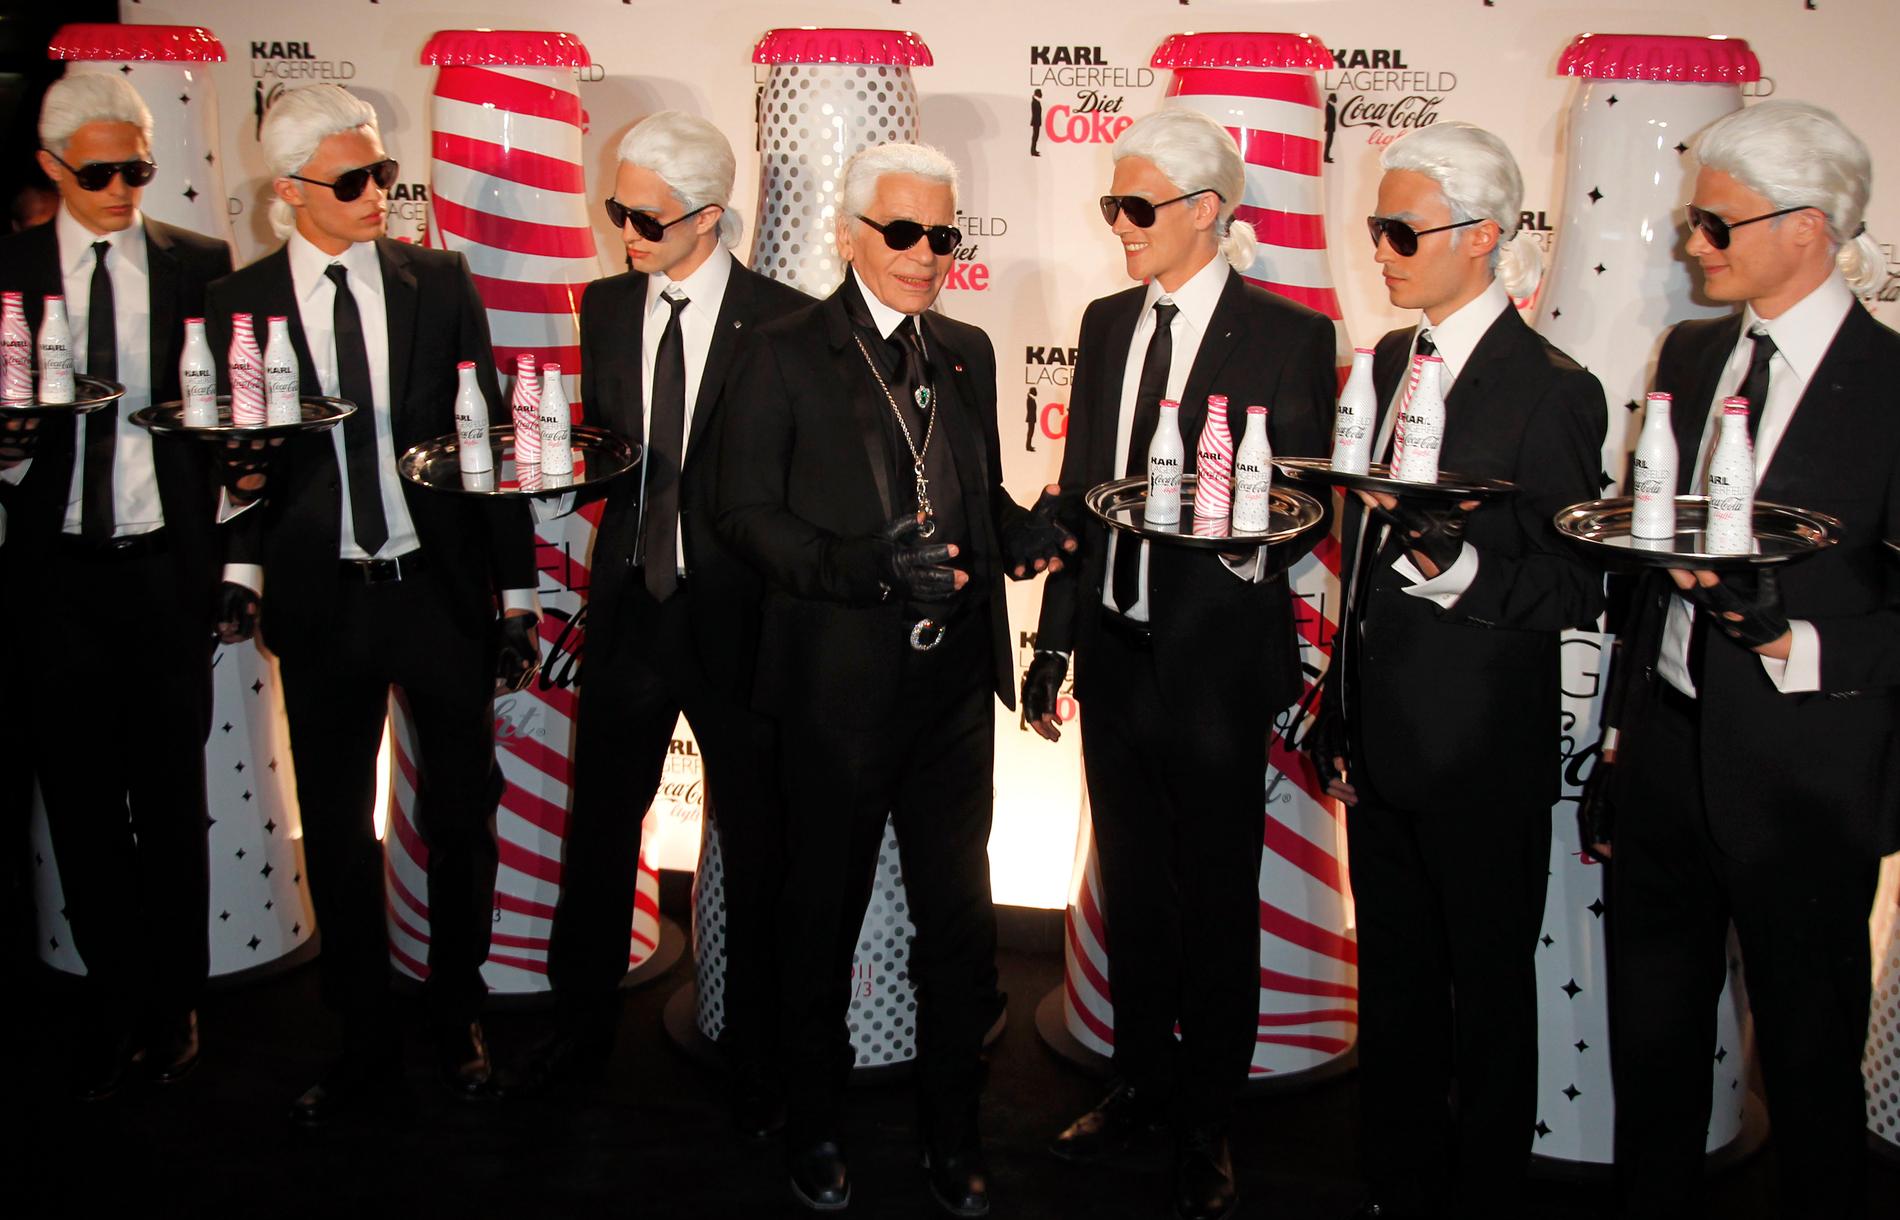 Karl Lagerfeld poserar med servitörer klädda som honom under ett evenemang med Coca Cola-flaskor som han designat. 2011